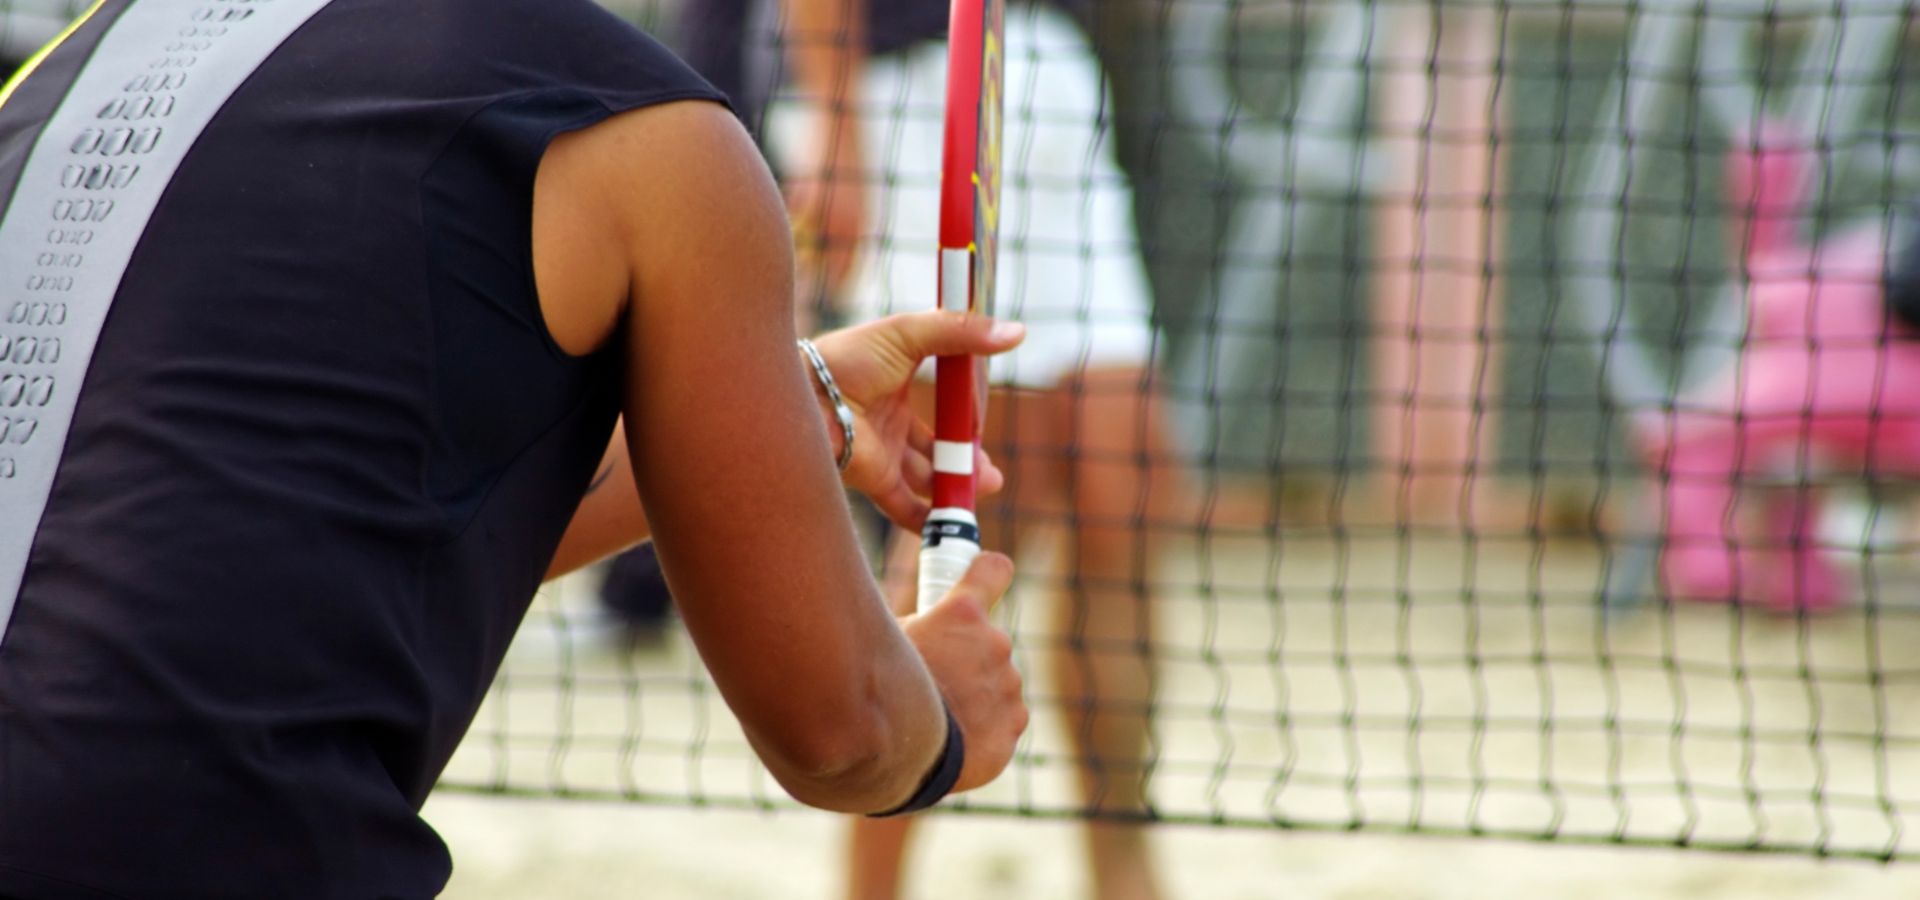 Tênis: ITF lança aplicativo para ensinar regras e brechas interessantes